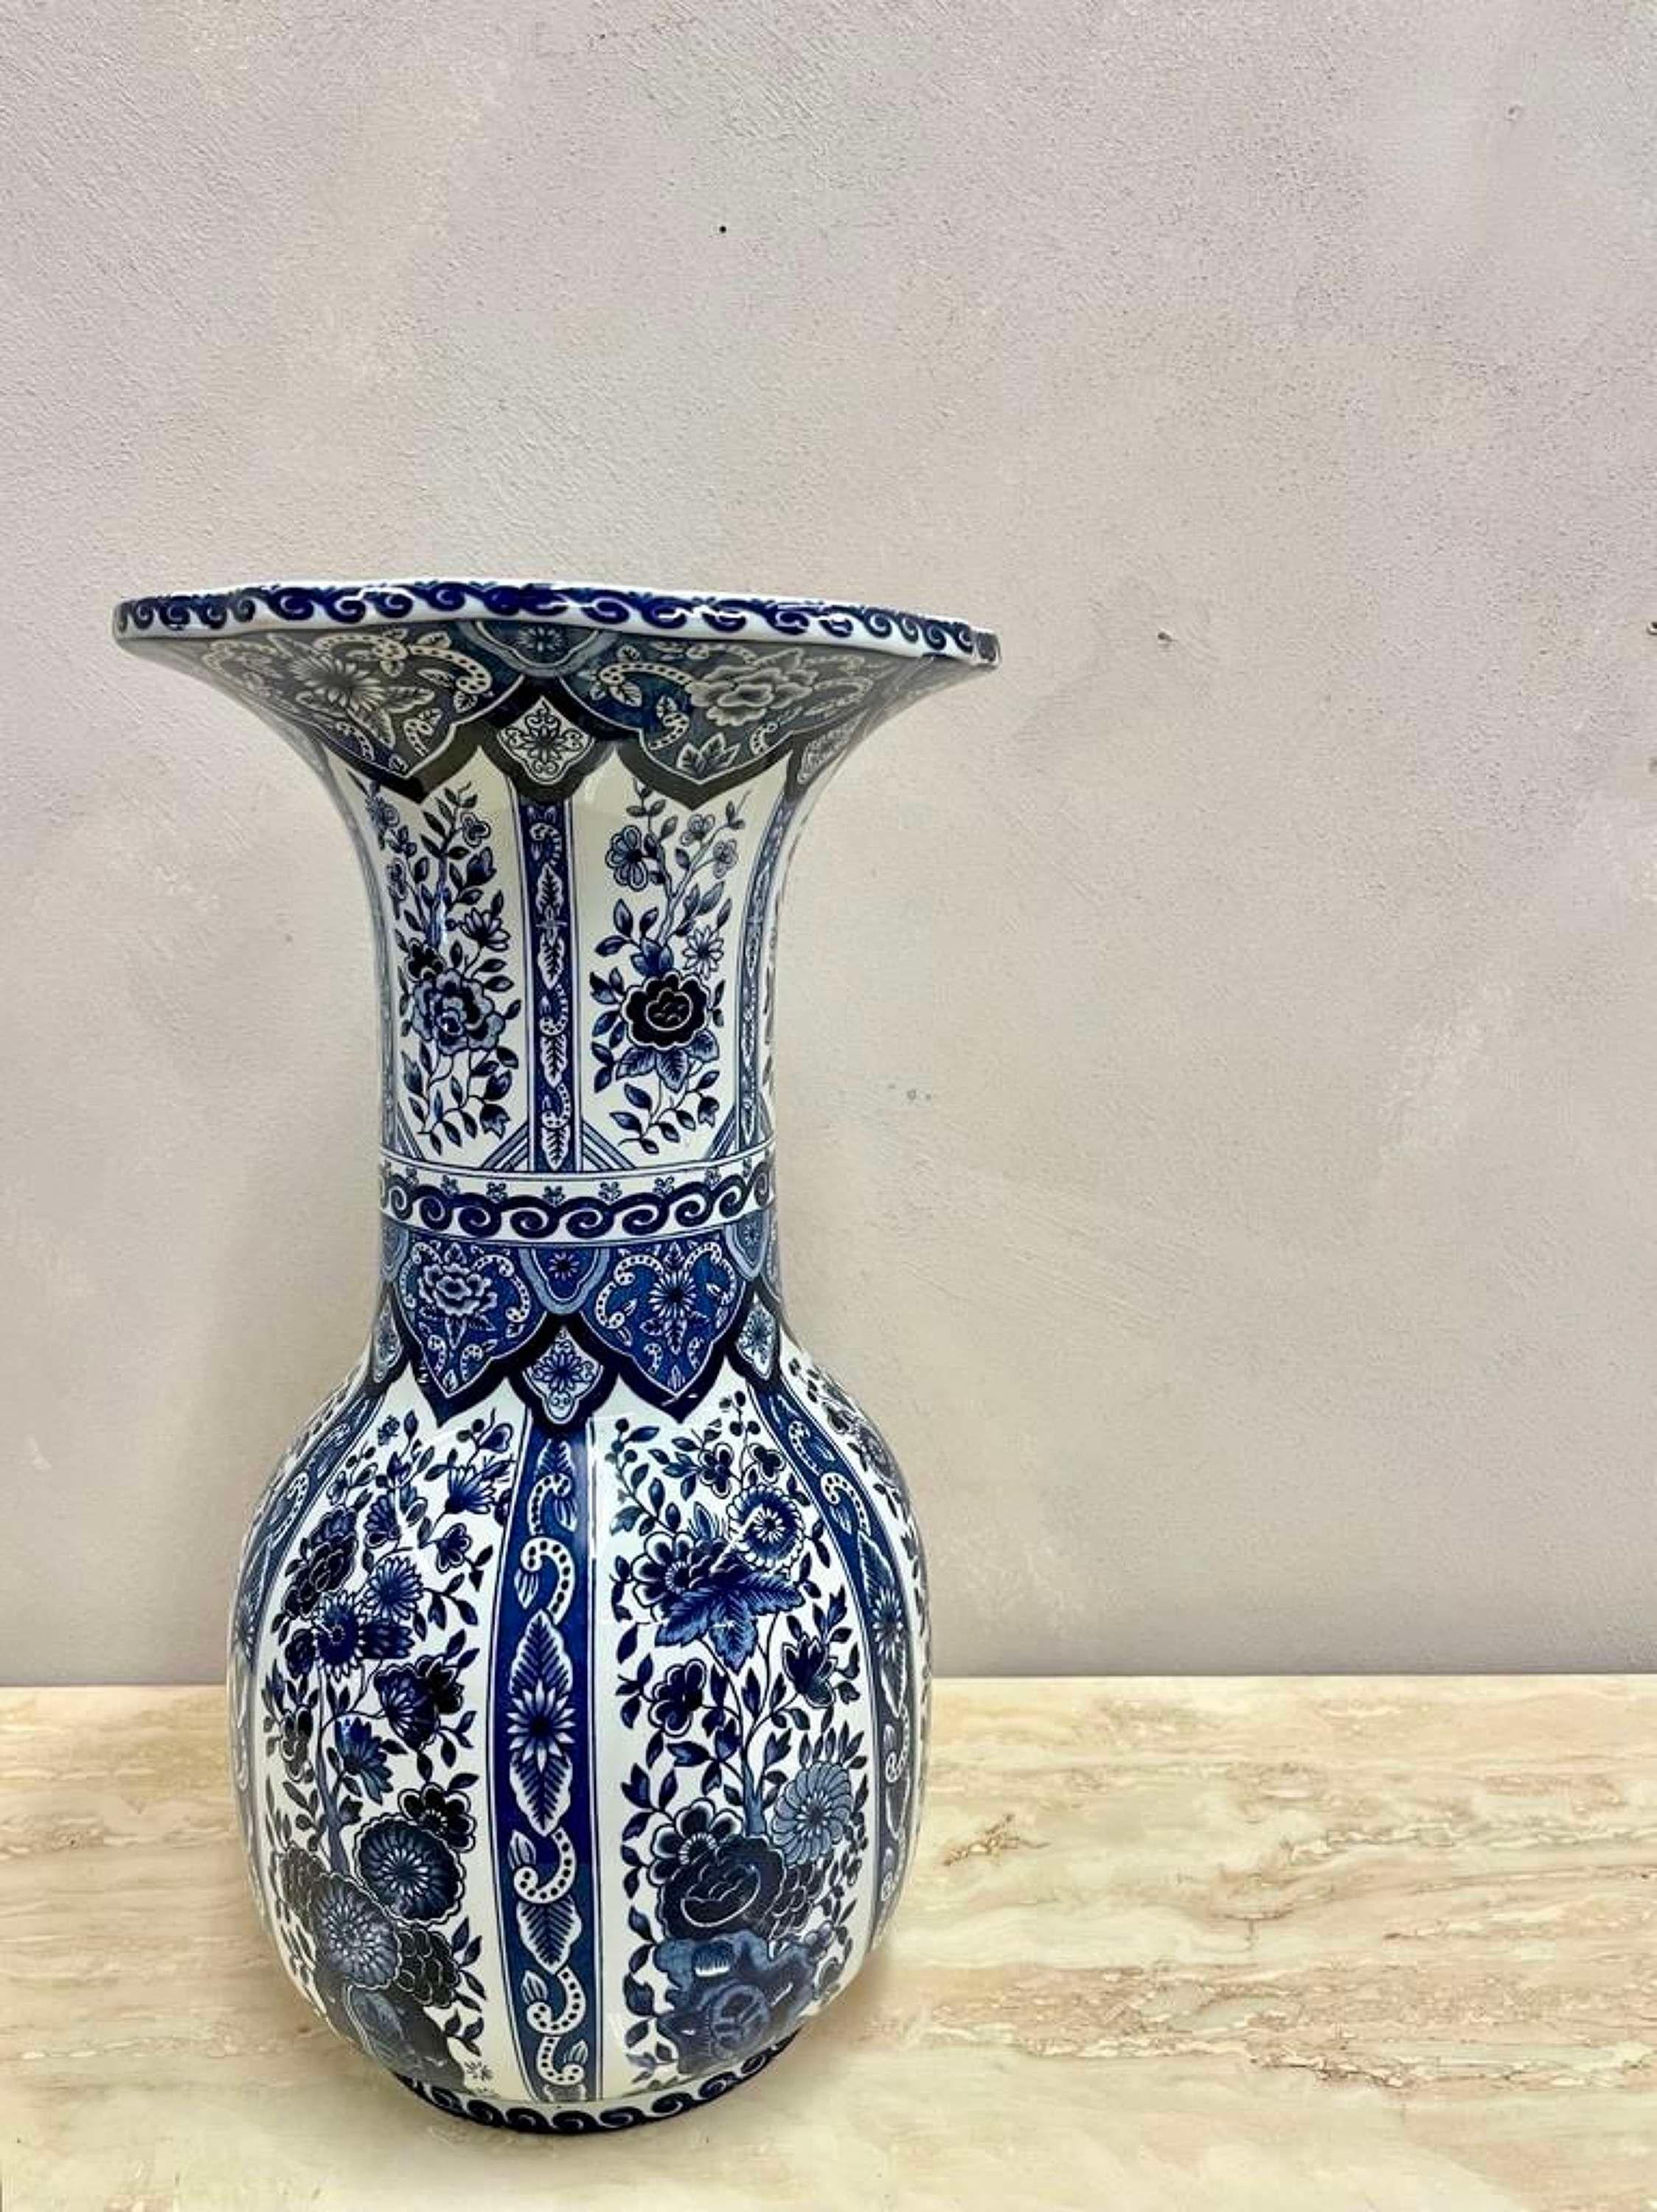 Großformatige, blau-weiße Vase aus Delfter Keramik.
Geriffelte Form.
Toller Zustand.
Gestempelt Boch für Royal Sphinx.
Abmessungen:B: 16cm (6.3